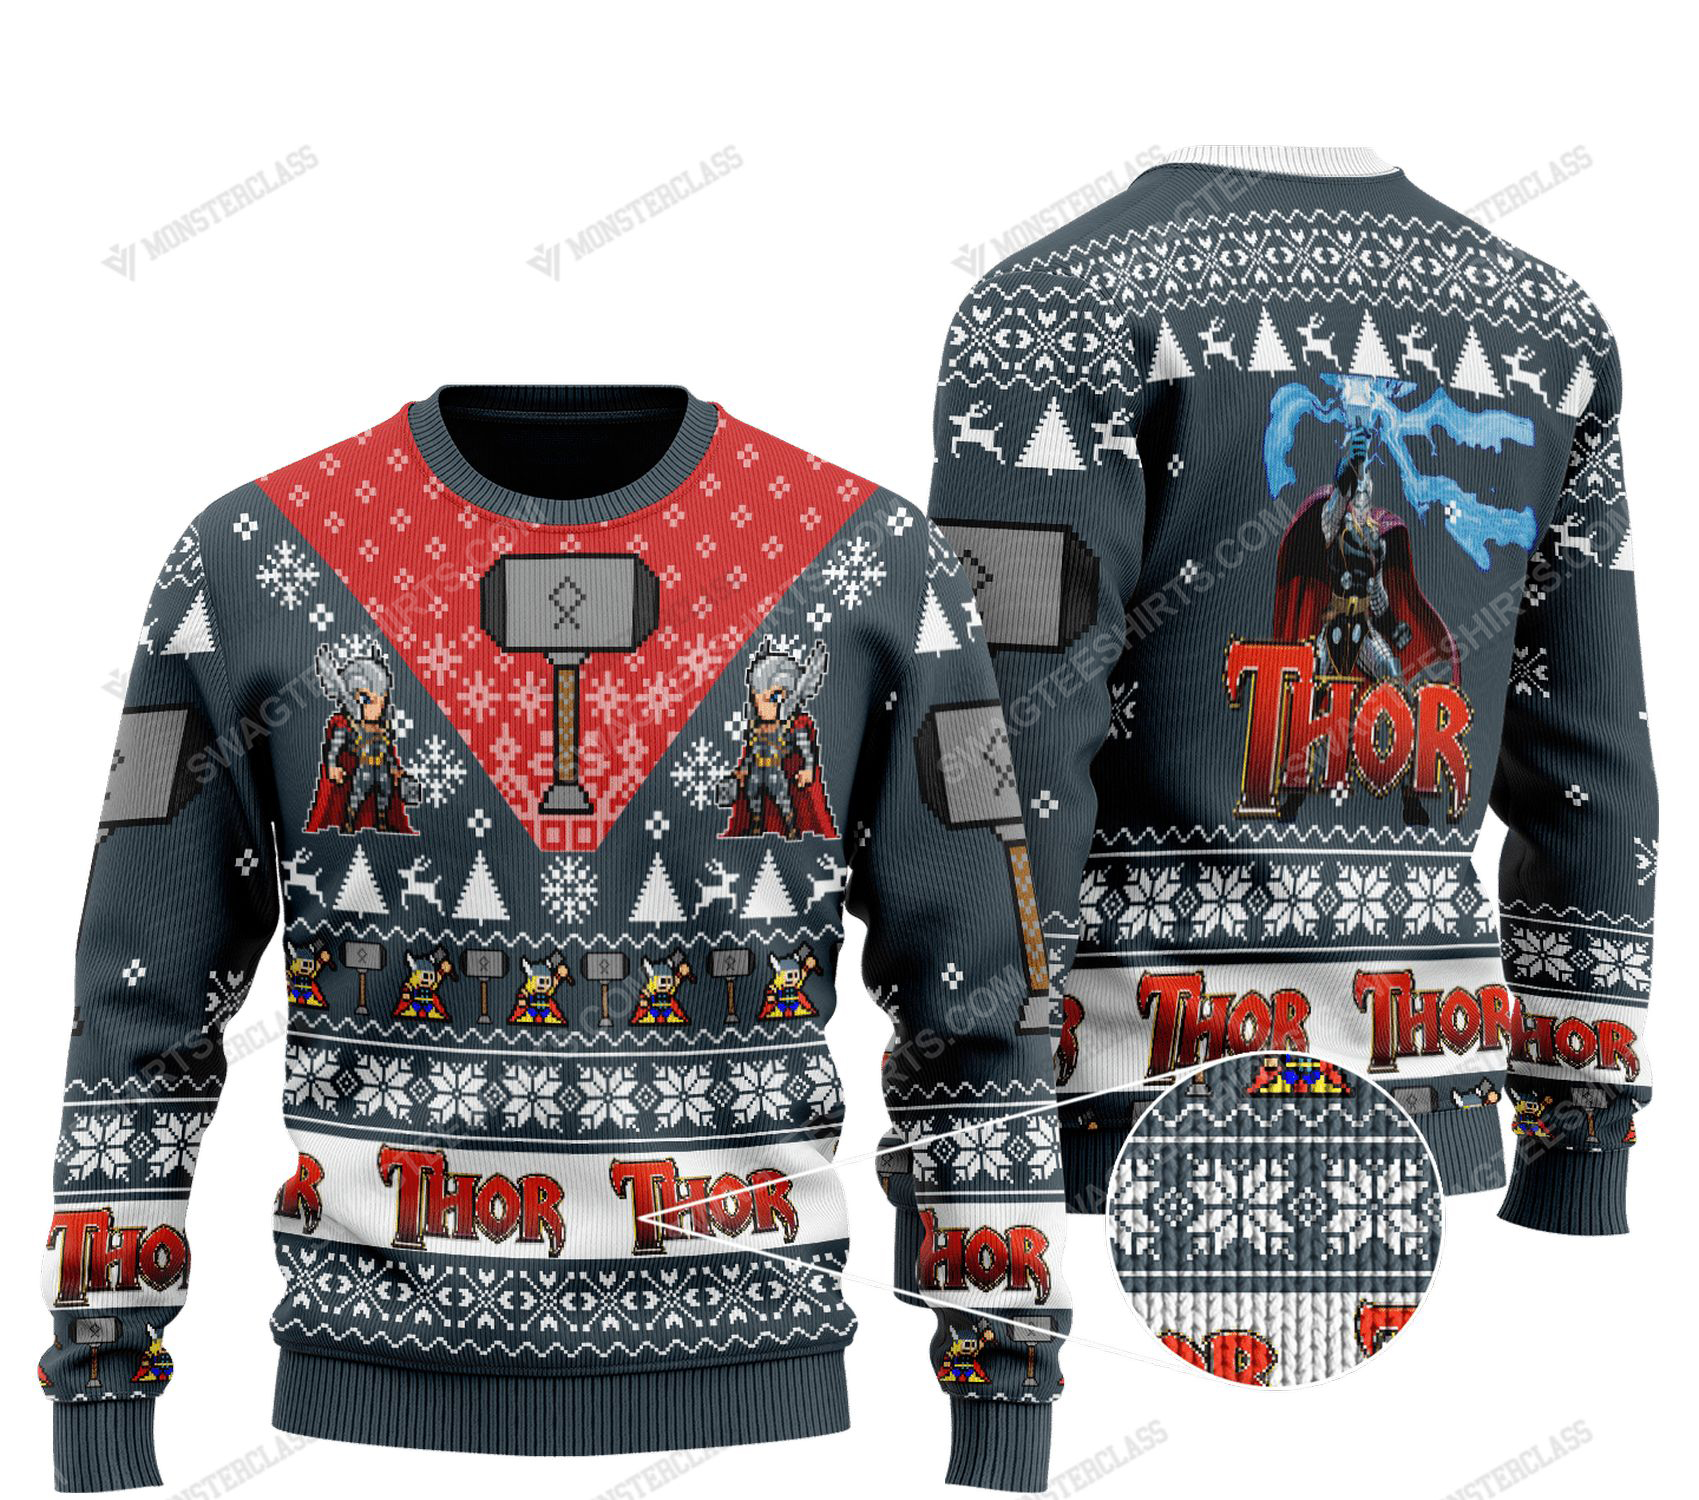 Thor marvel comics all over print ugly christmas sweater